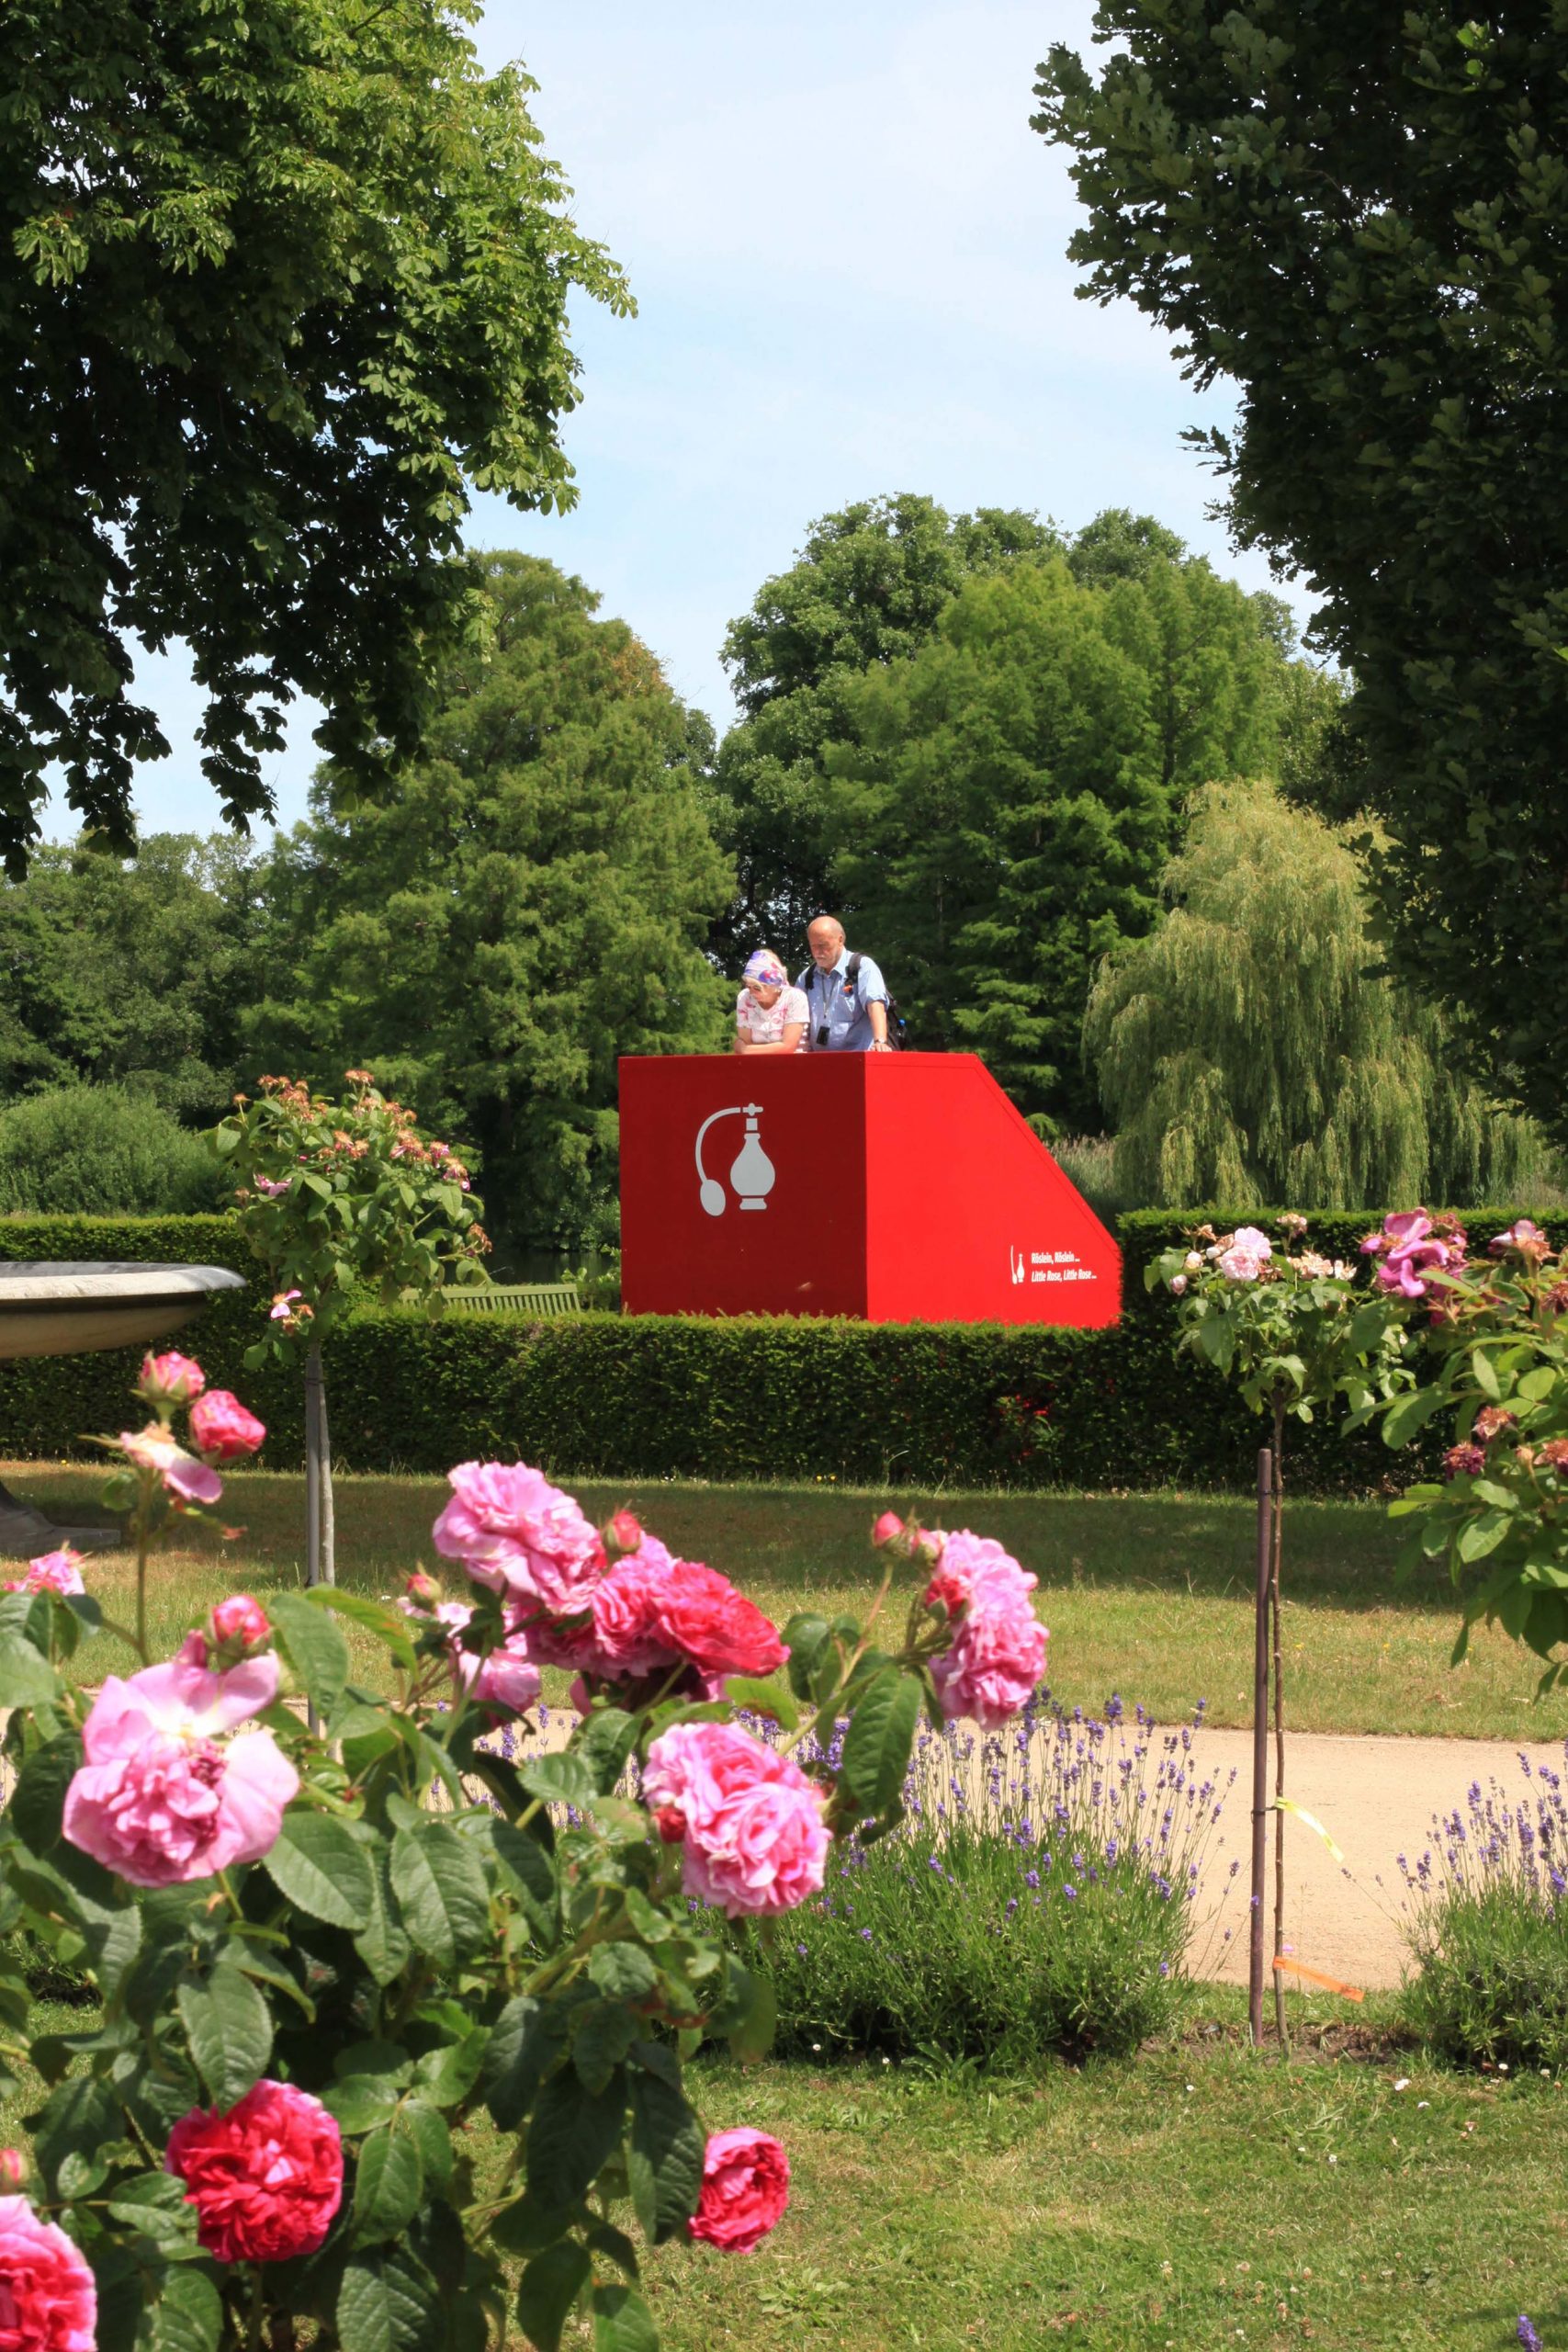 Eine rote Ausblickstation mit Info der Outdoorausstellung Paradiesapfel, im Vordergrund rote und rosafarbene Rosen.